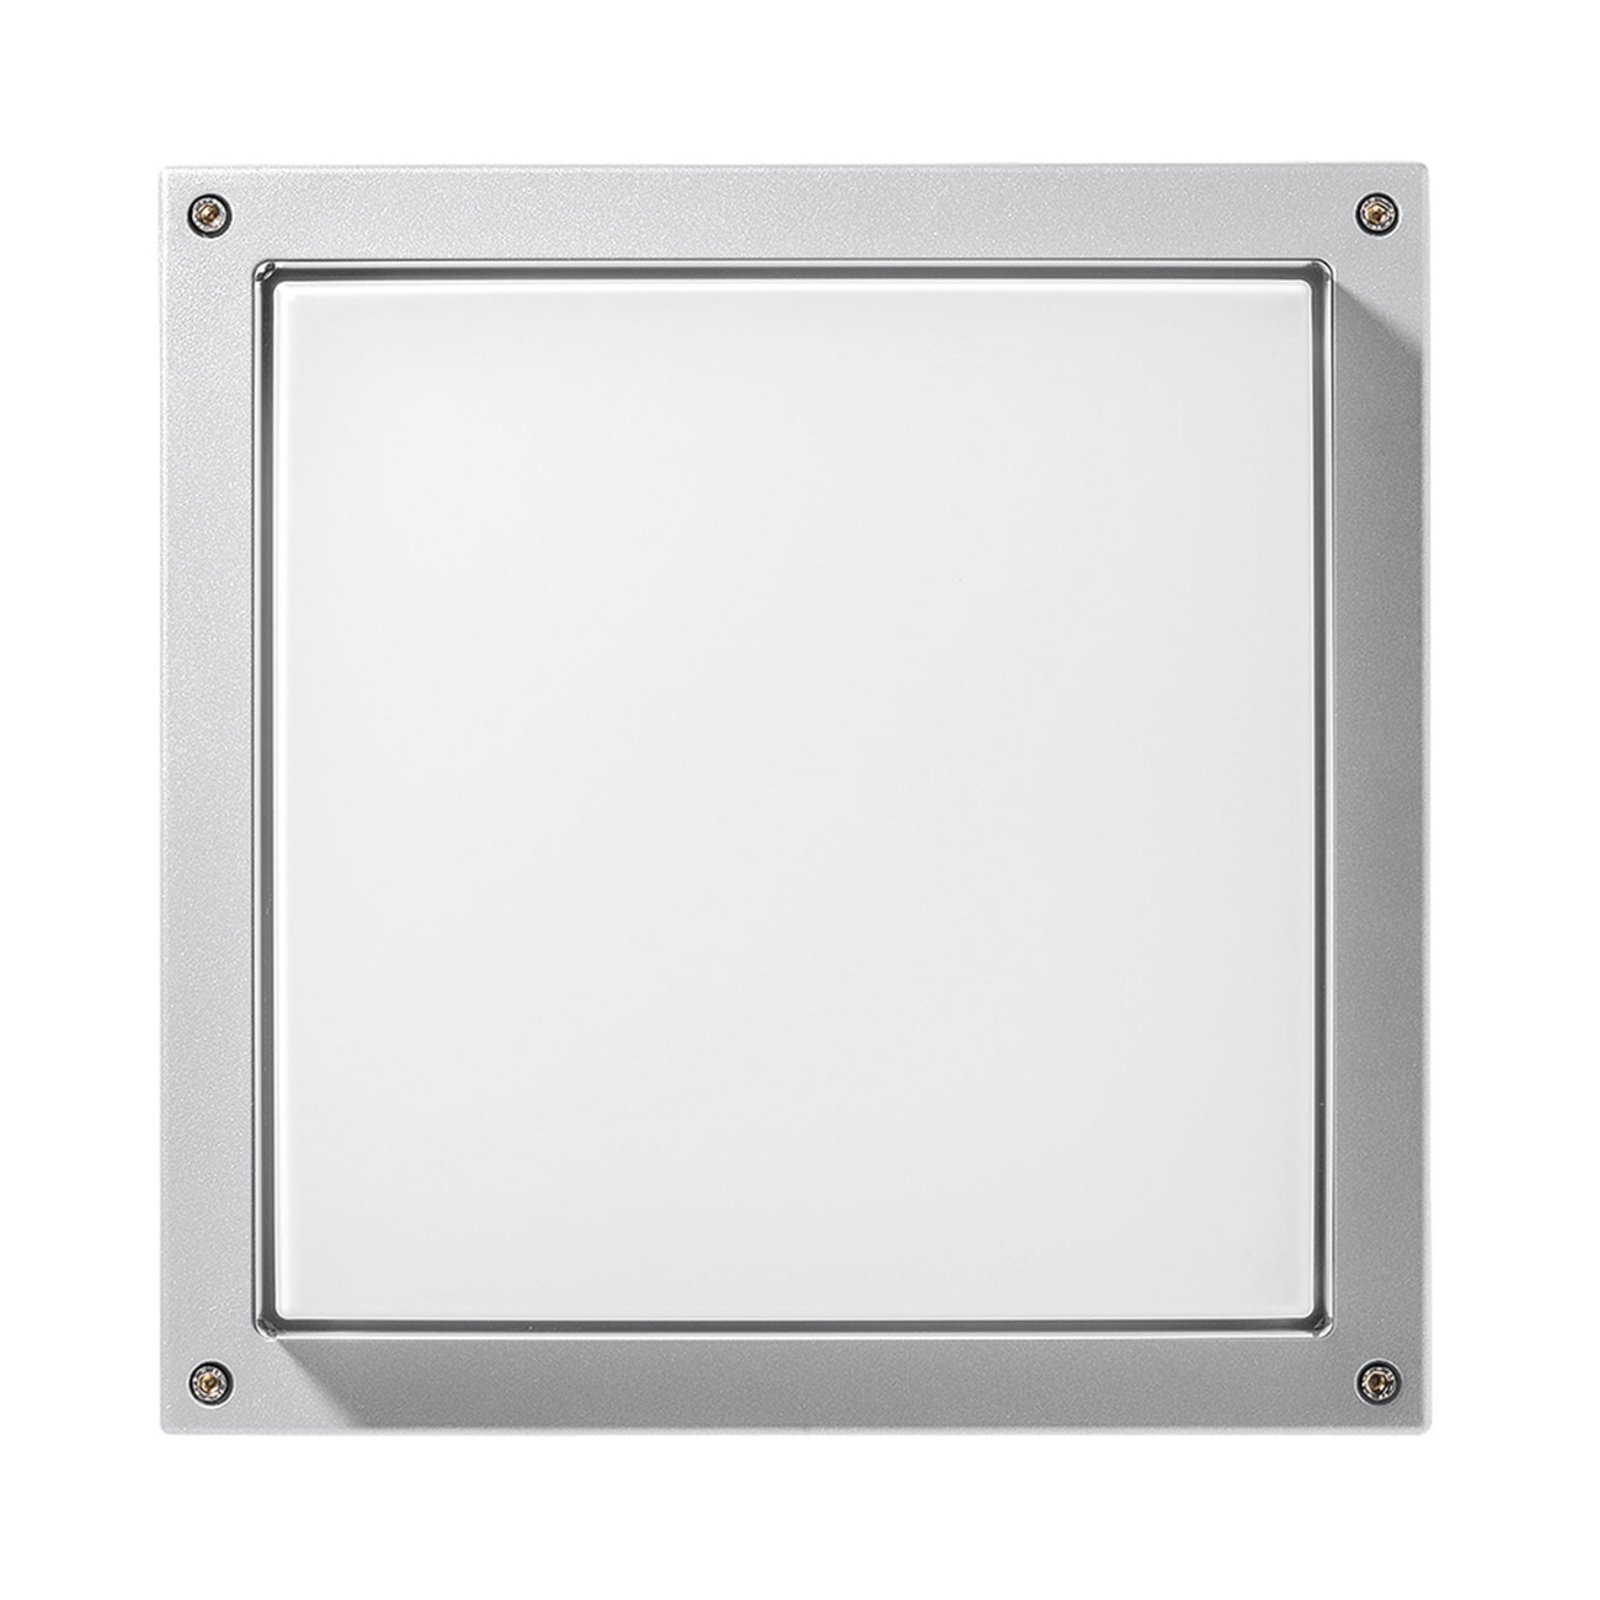 Sieninis šviestuvas "Bliz Square 40" 3 000K baltos spalvos, reguliuojamas